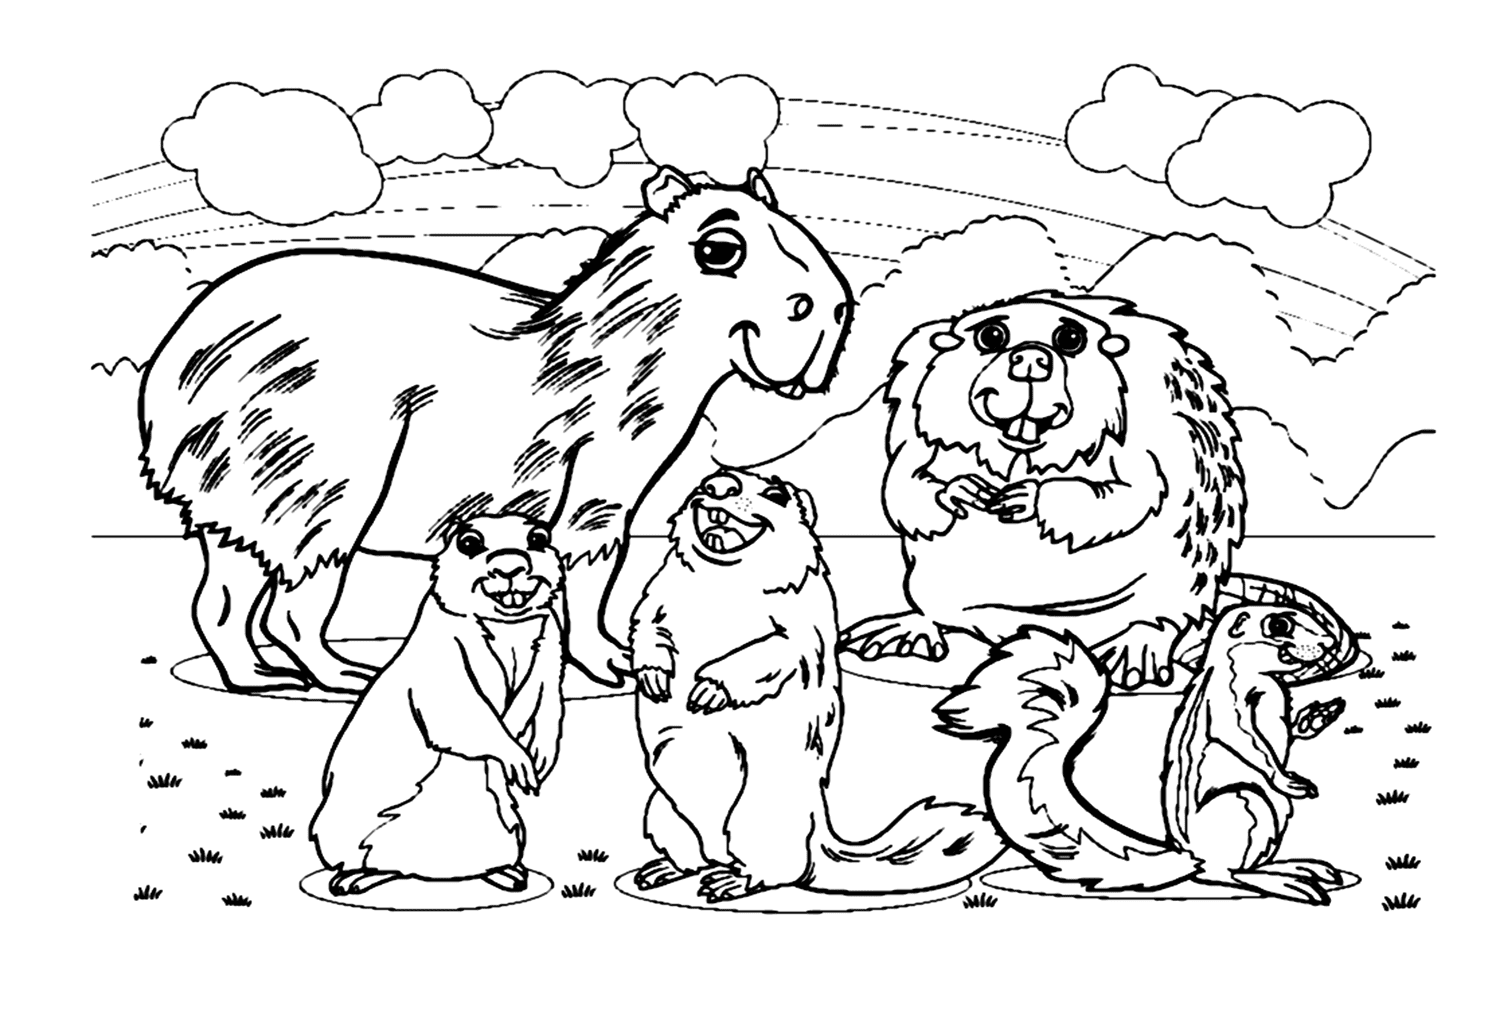 Marmotta con roditori from Marmotta